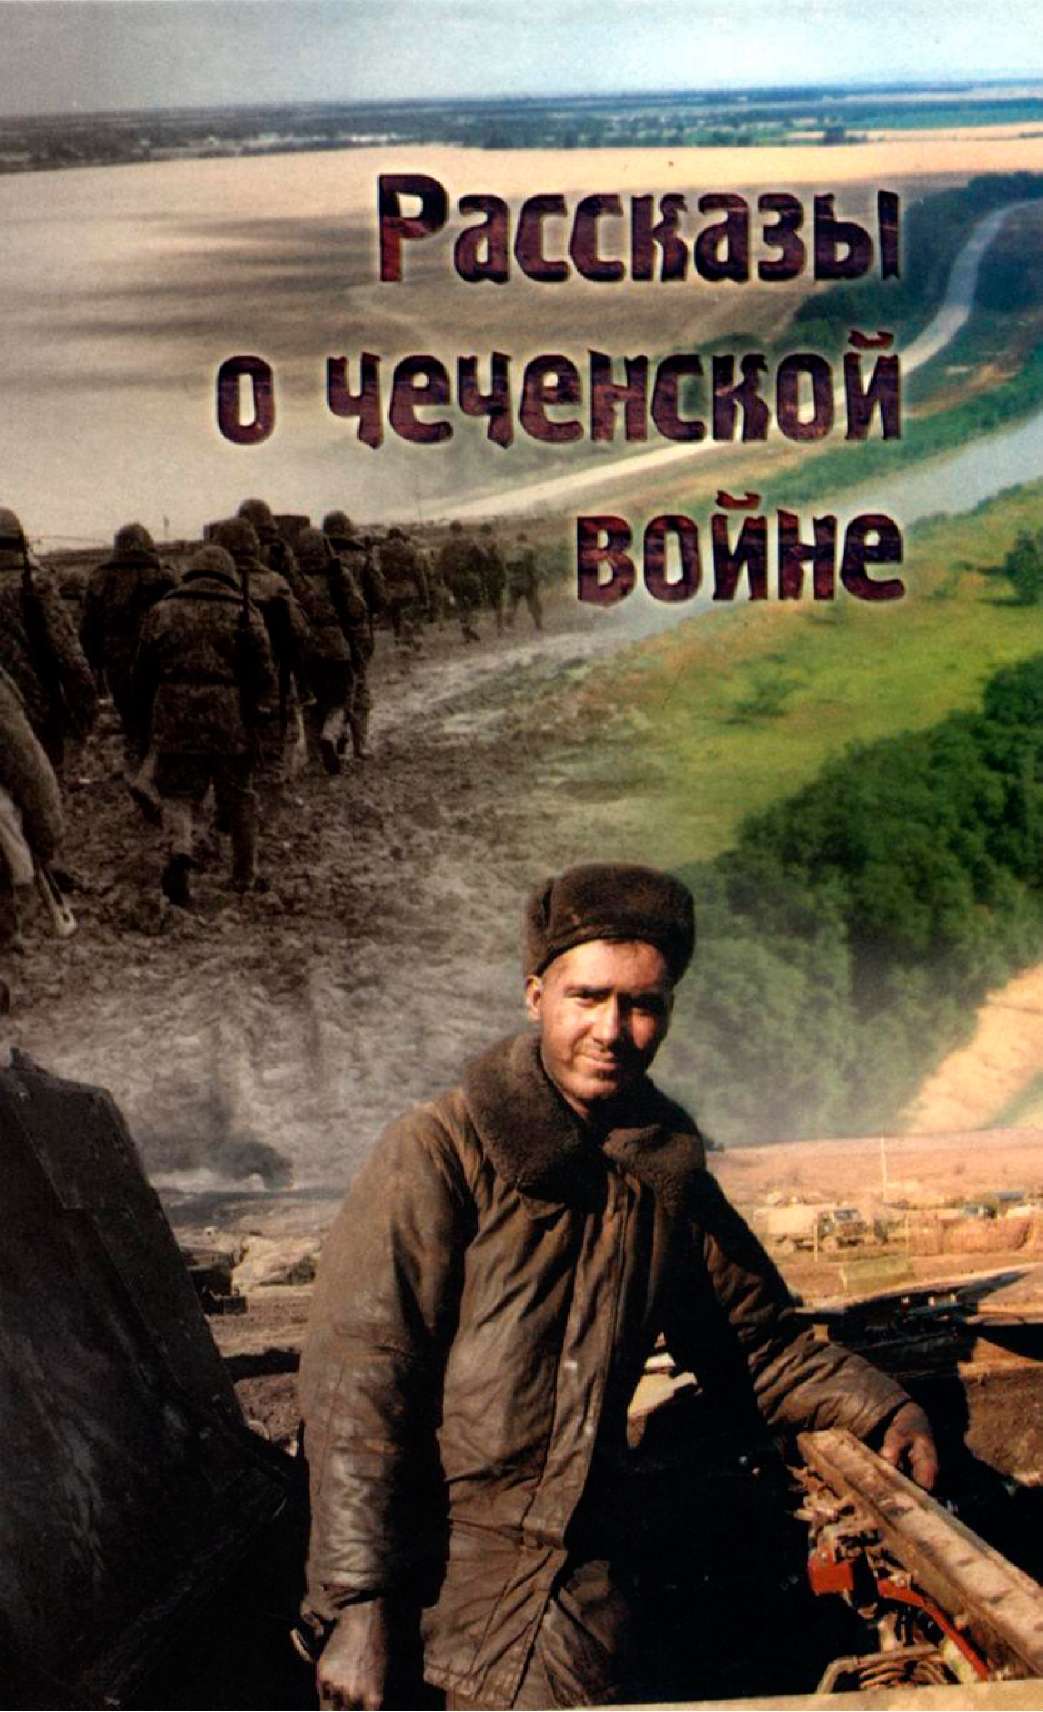 Носков Виталий - Рассказы о чеченской войне скачать бесплатно